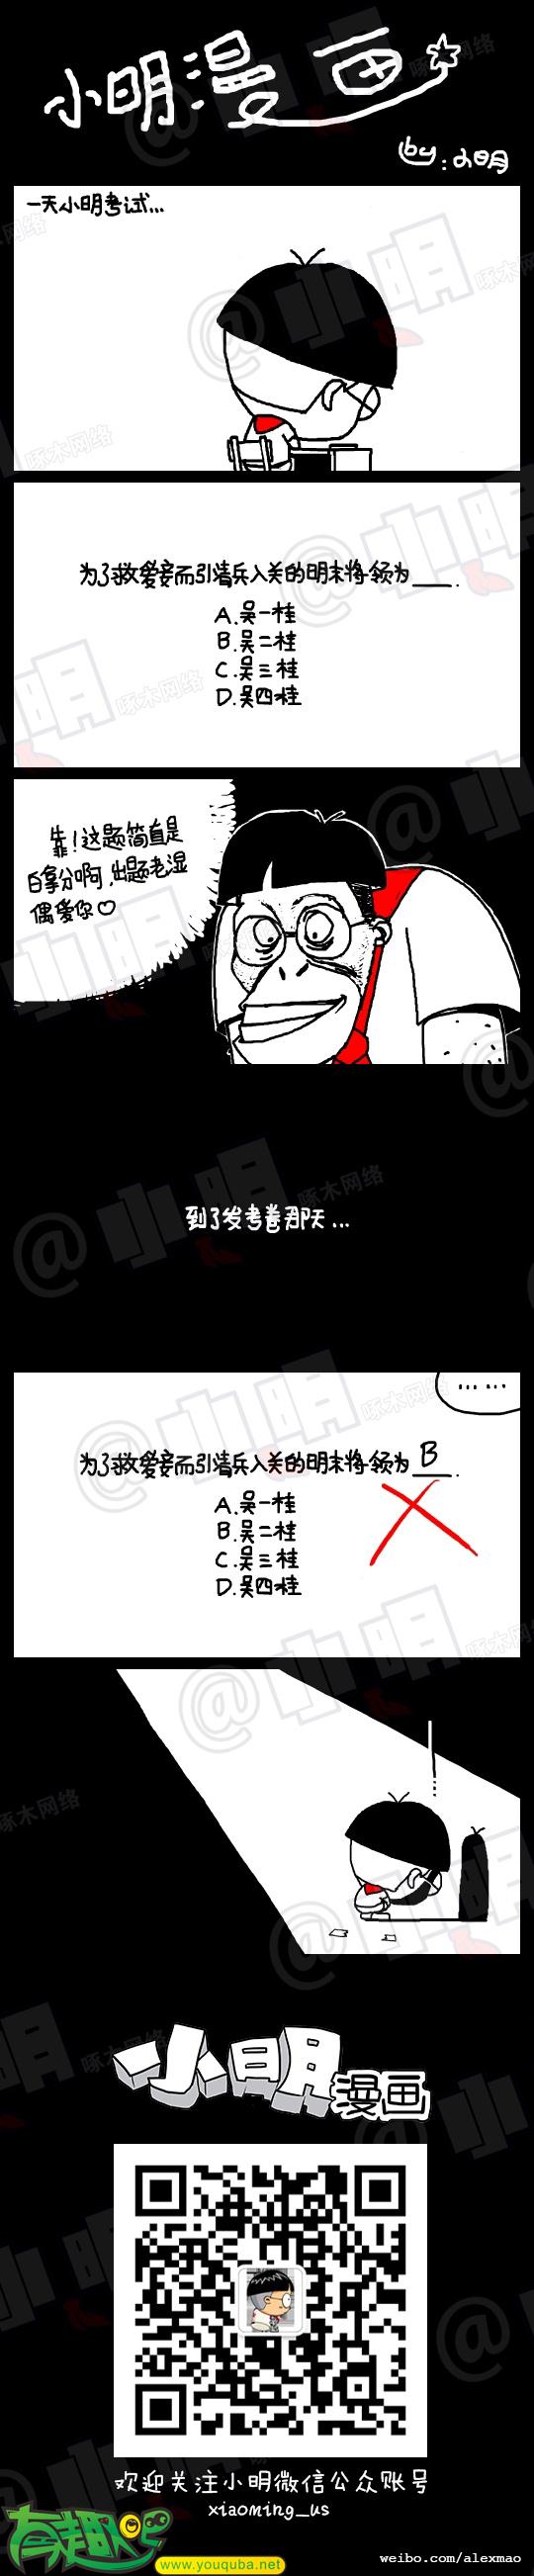 小明系列漫画：明儿考试